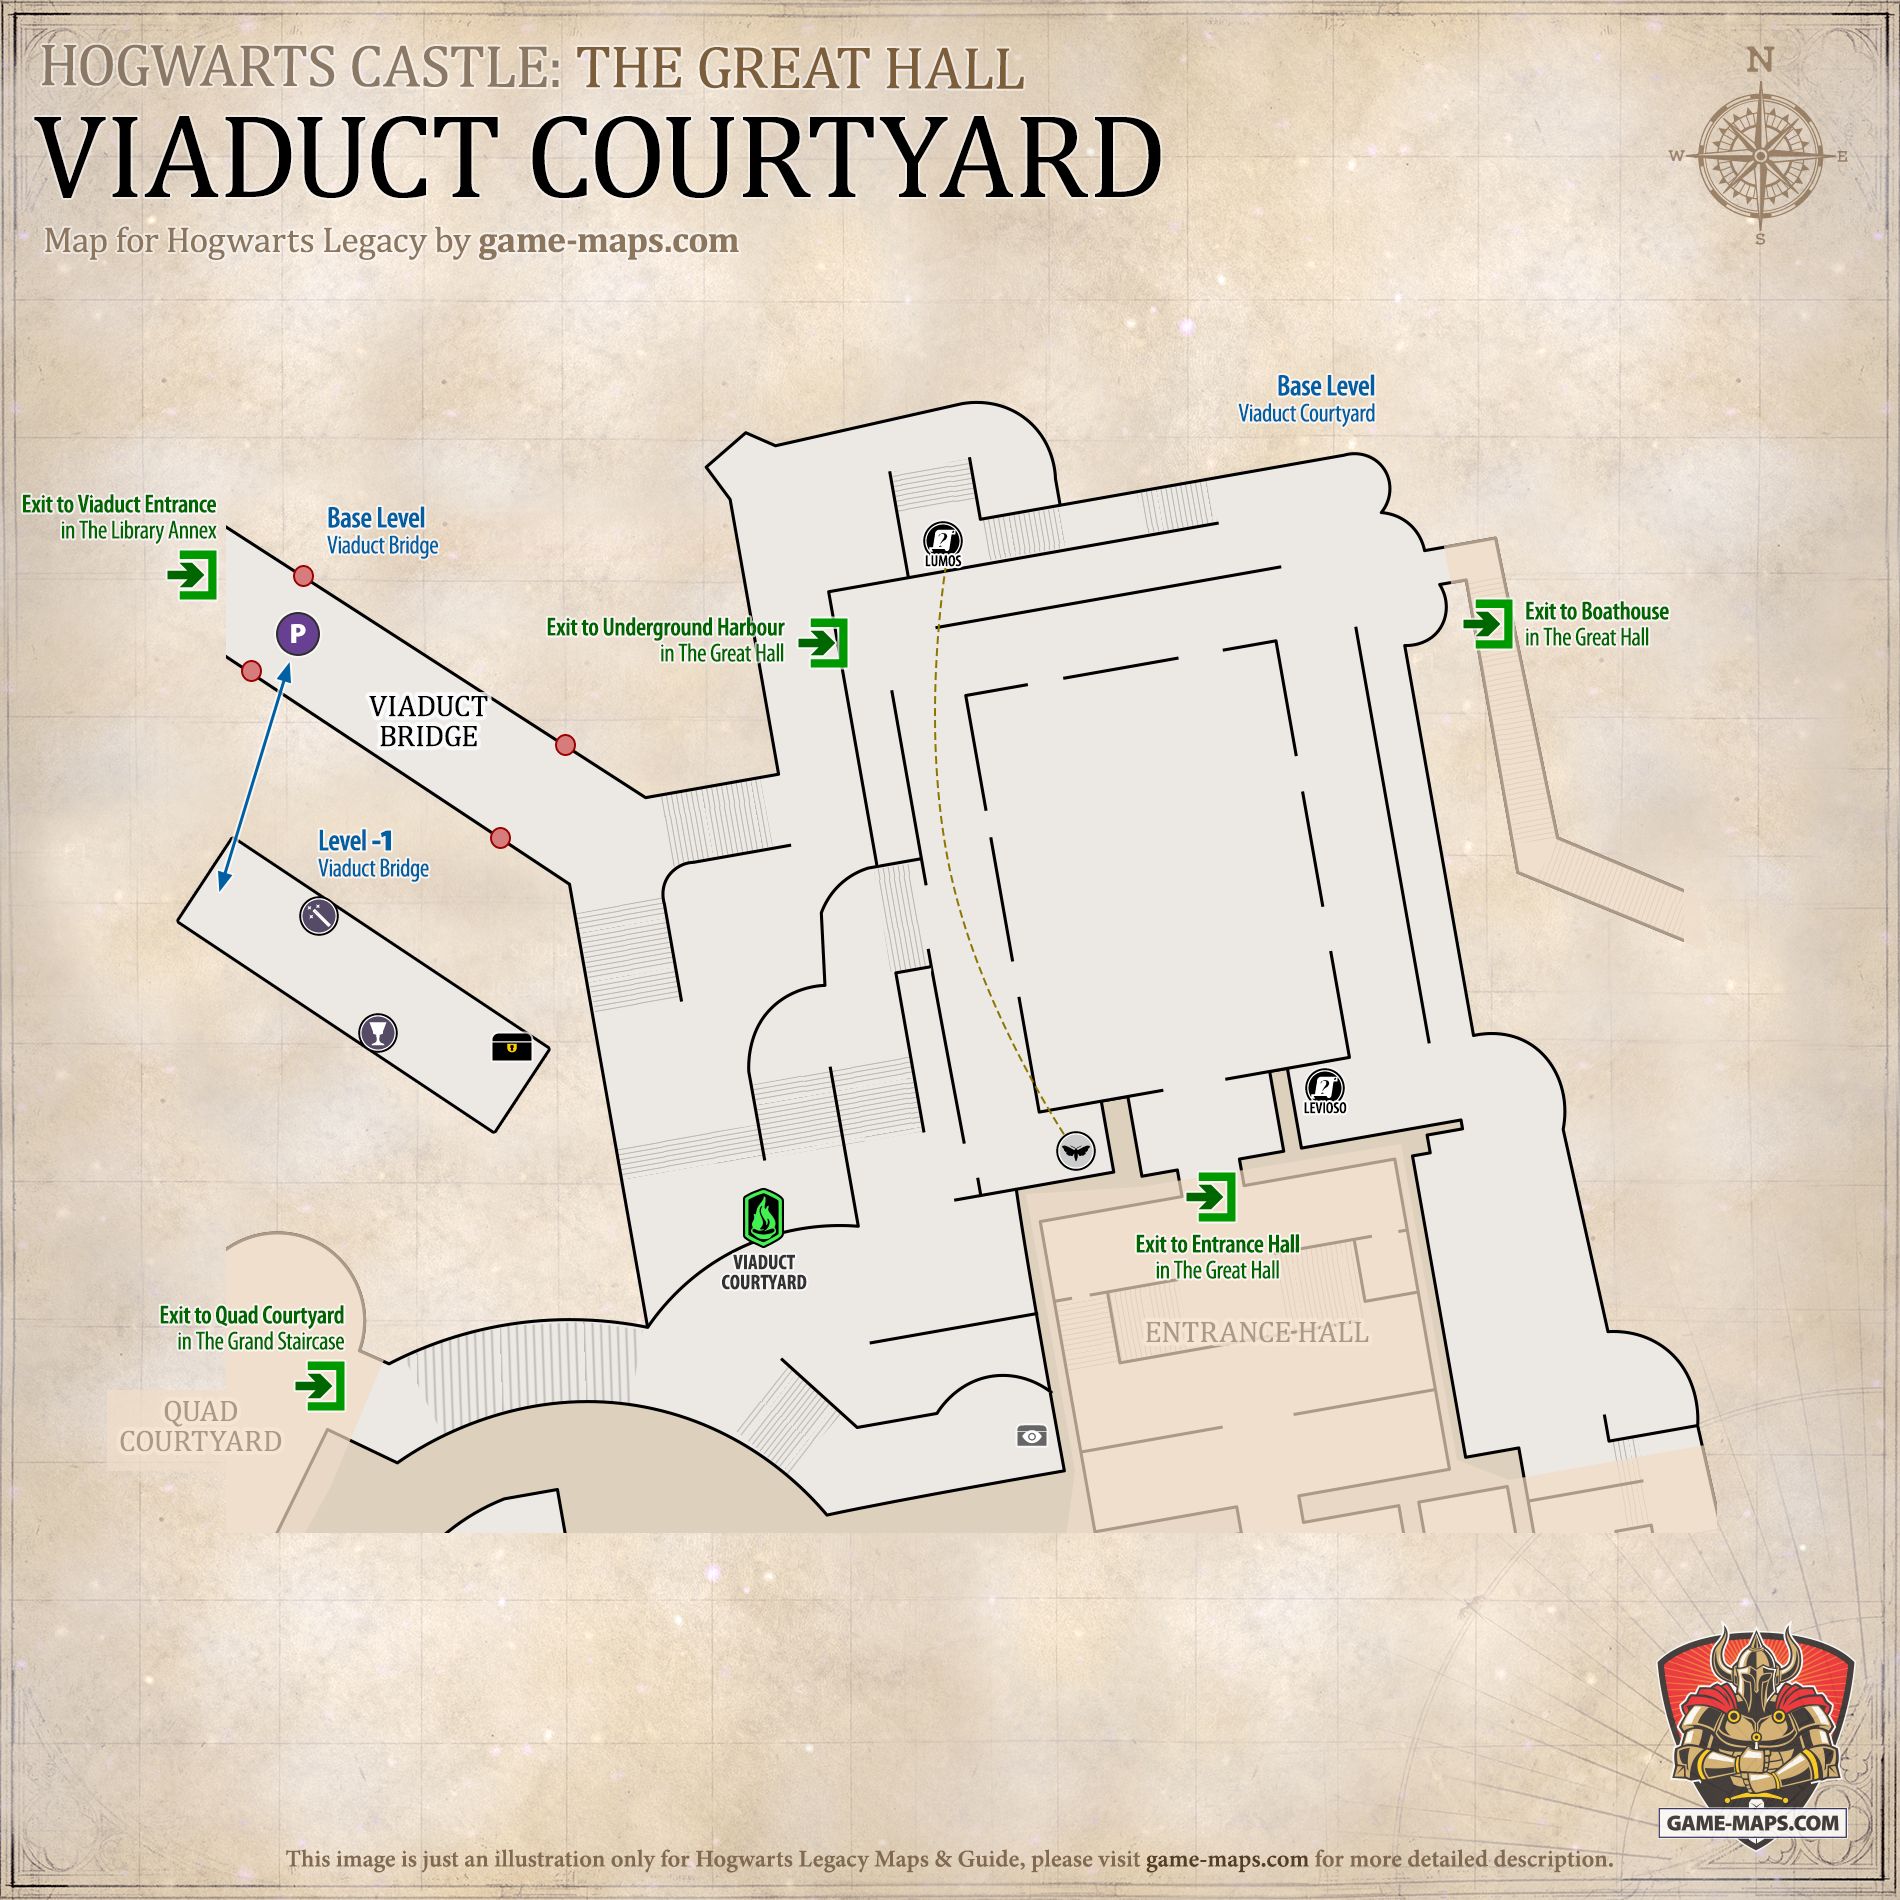 Viaduct Courtyard Hogwarts Legacy